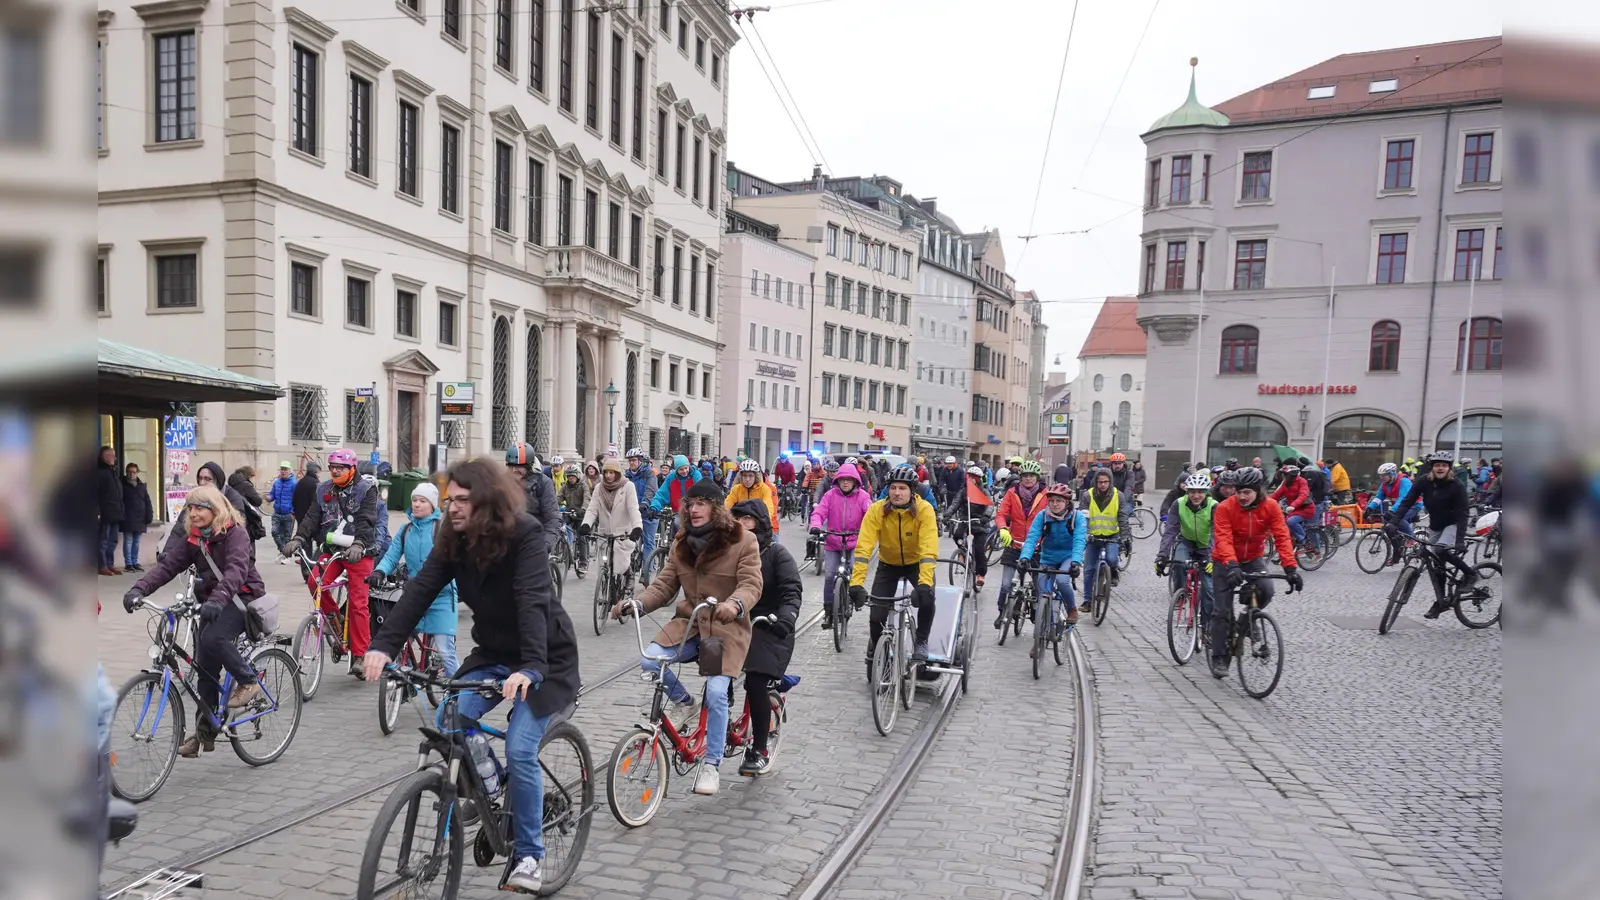 Start der jüngsten Fahrraddemo am Rathausplatz. Über die A8 dürfen die Demonstranten erneut nicht. (Foto: Maximilian Tauch)